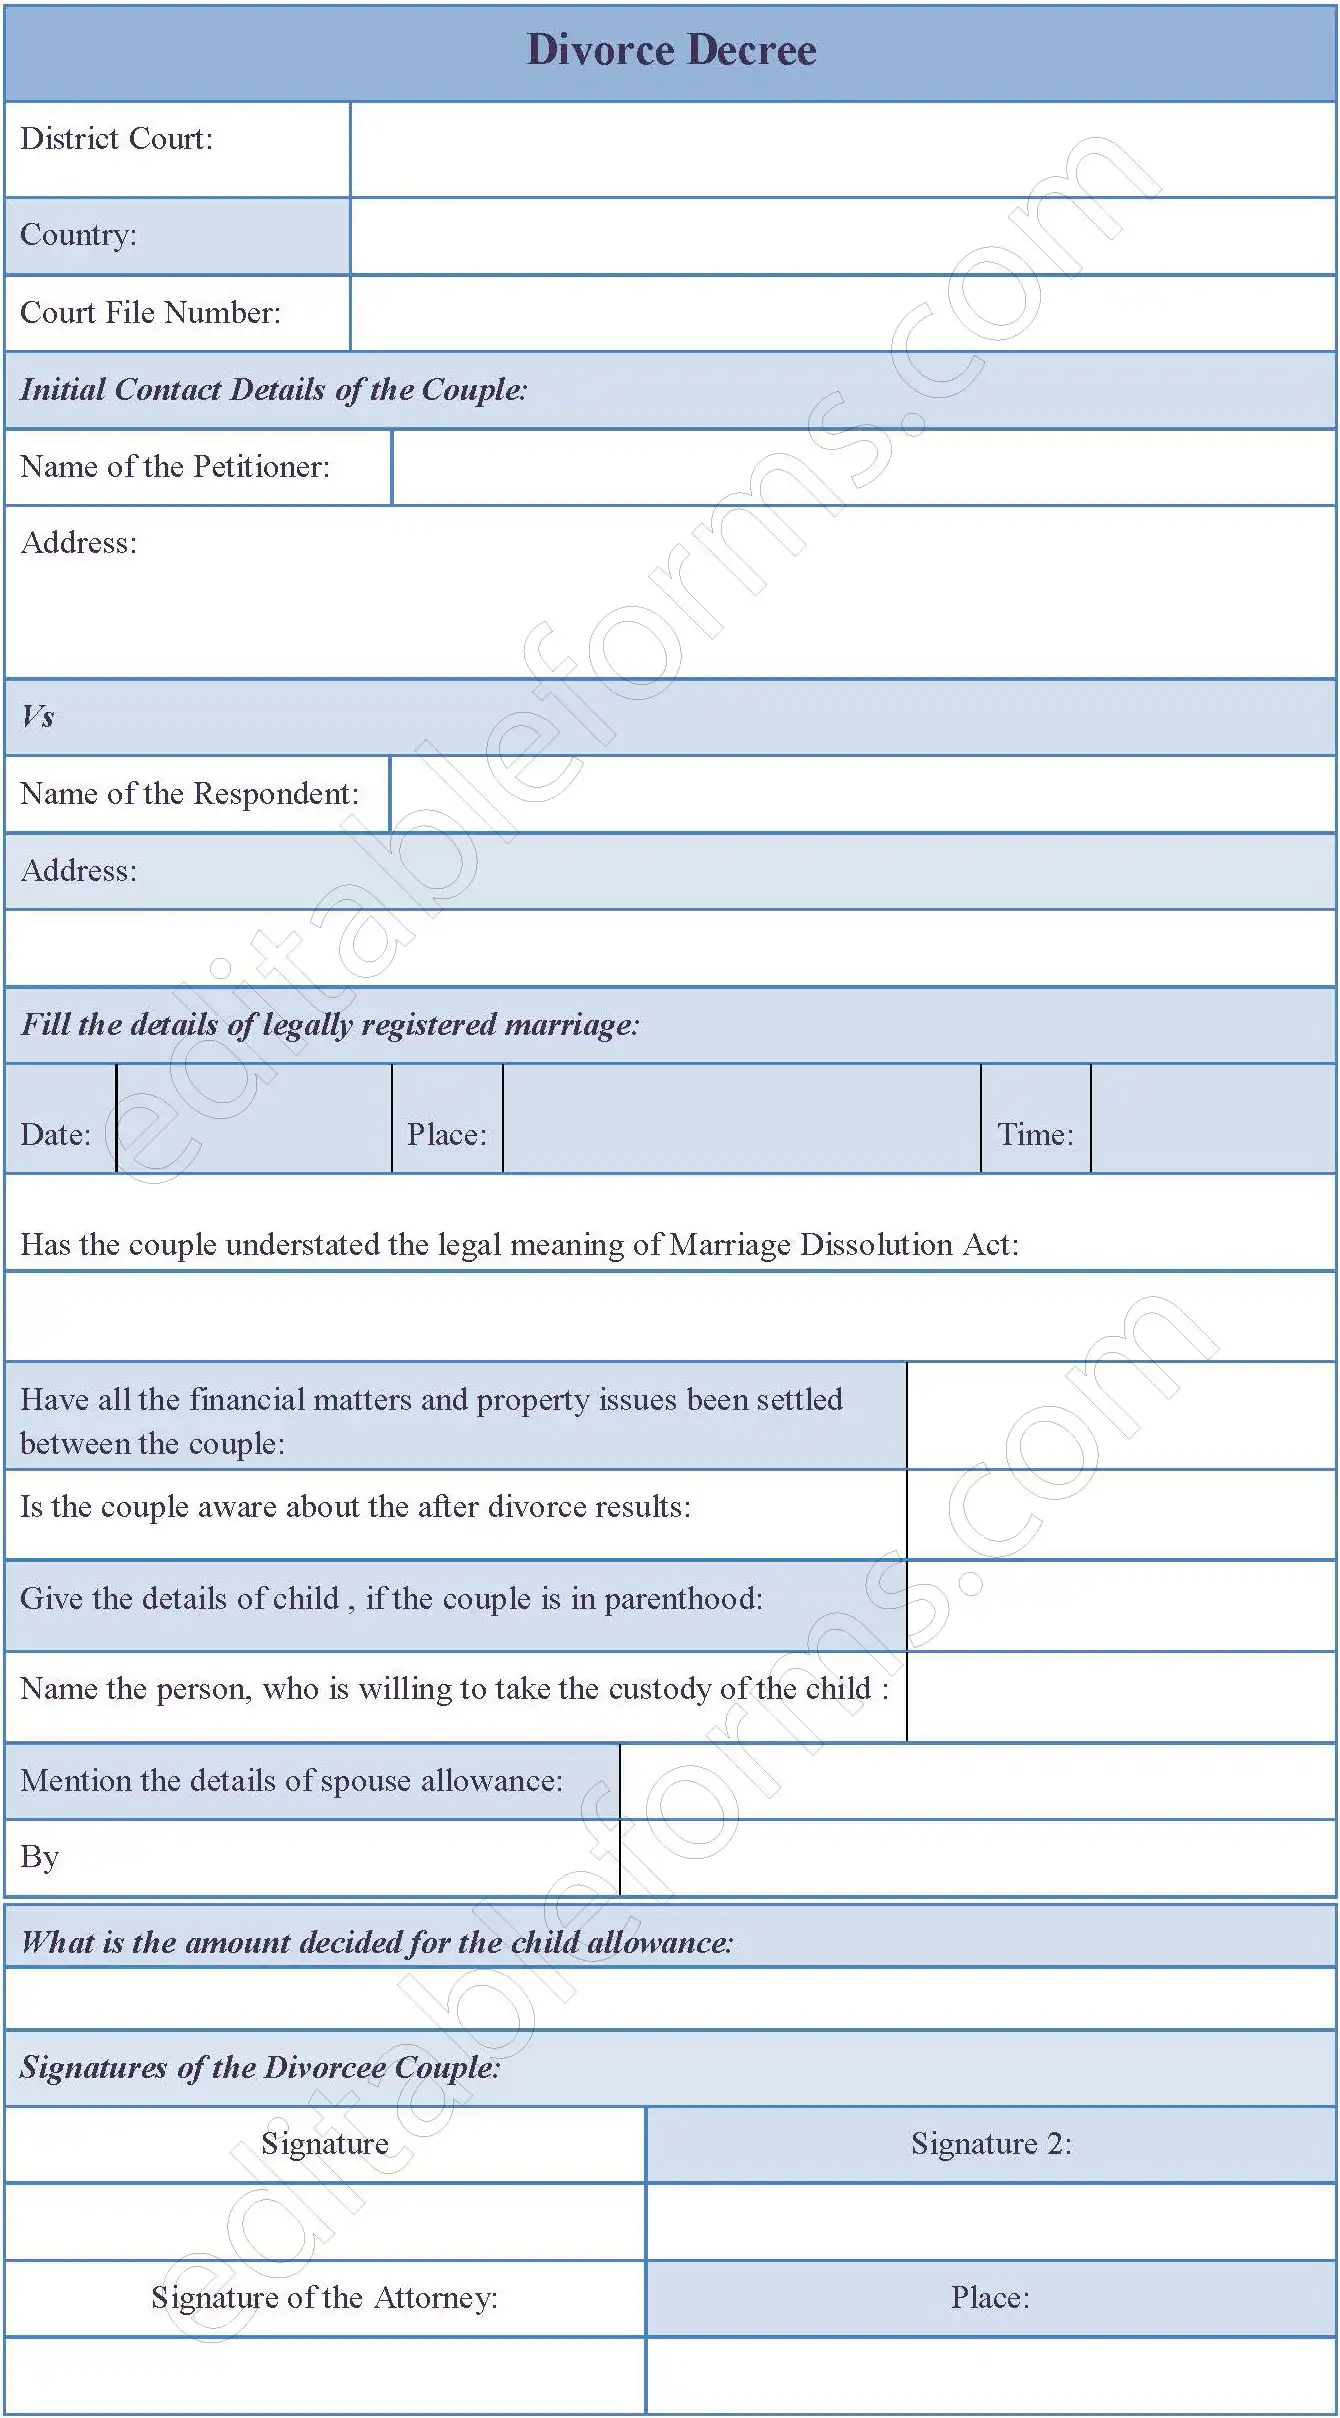 Divorce Decree Fillable PDF Template